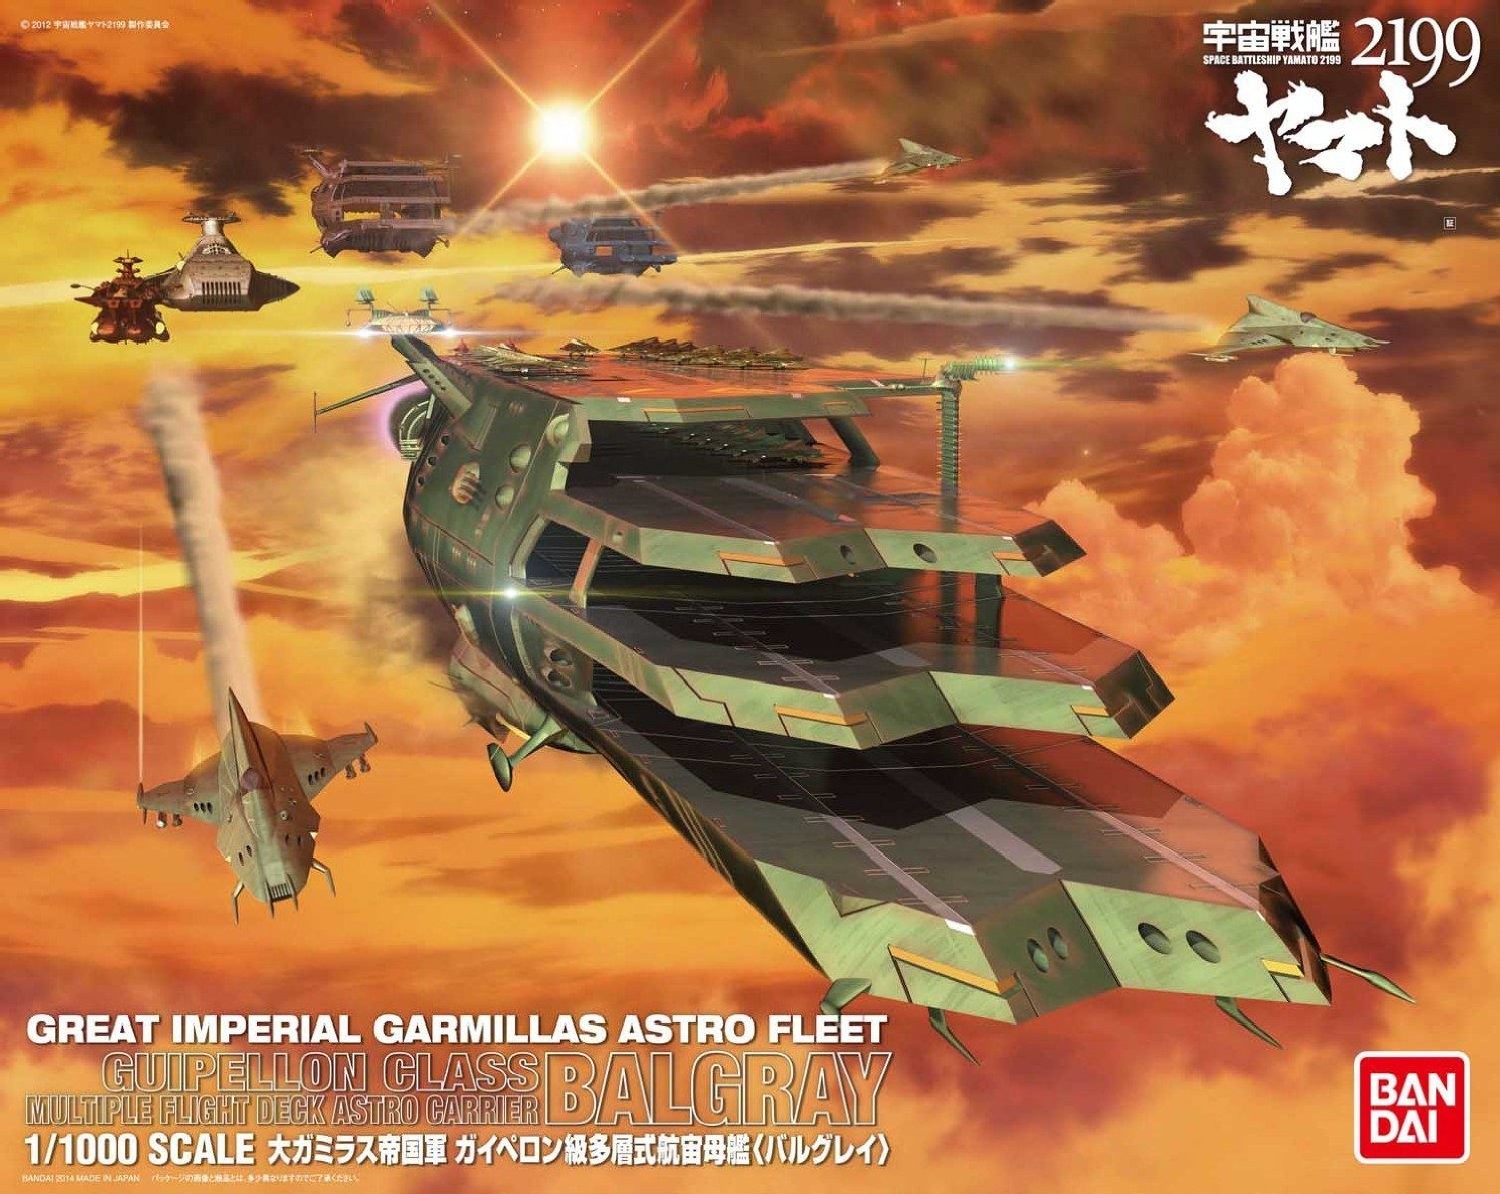 Great Imperial Garmillas Astro Fleet Guipellon Class Multi-Level Space Carrier Balgray (1/1000) 